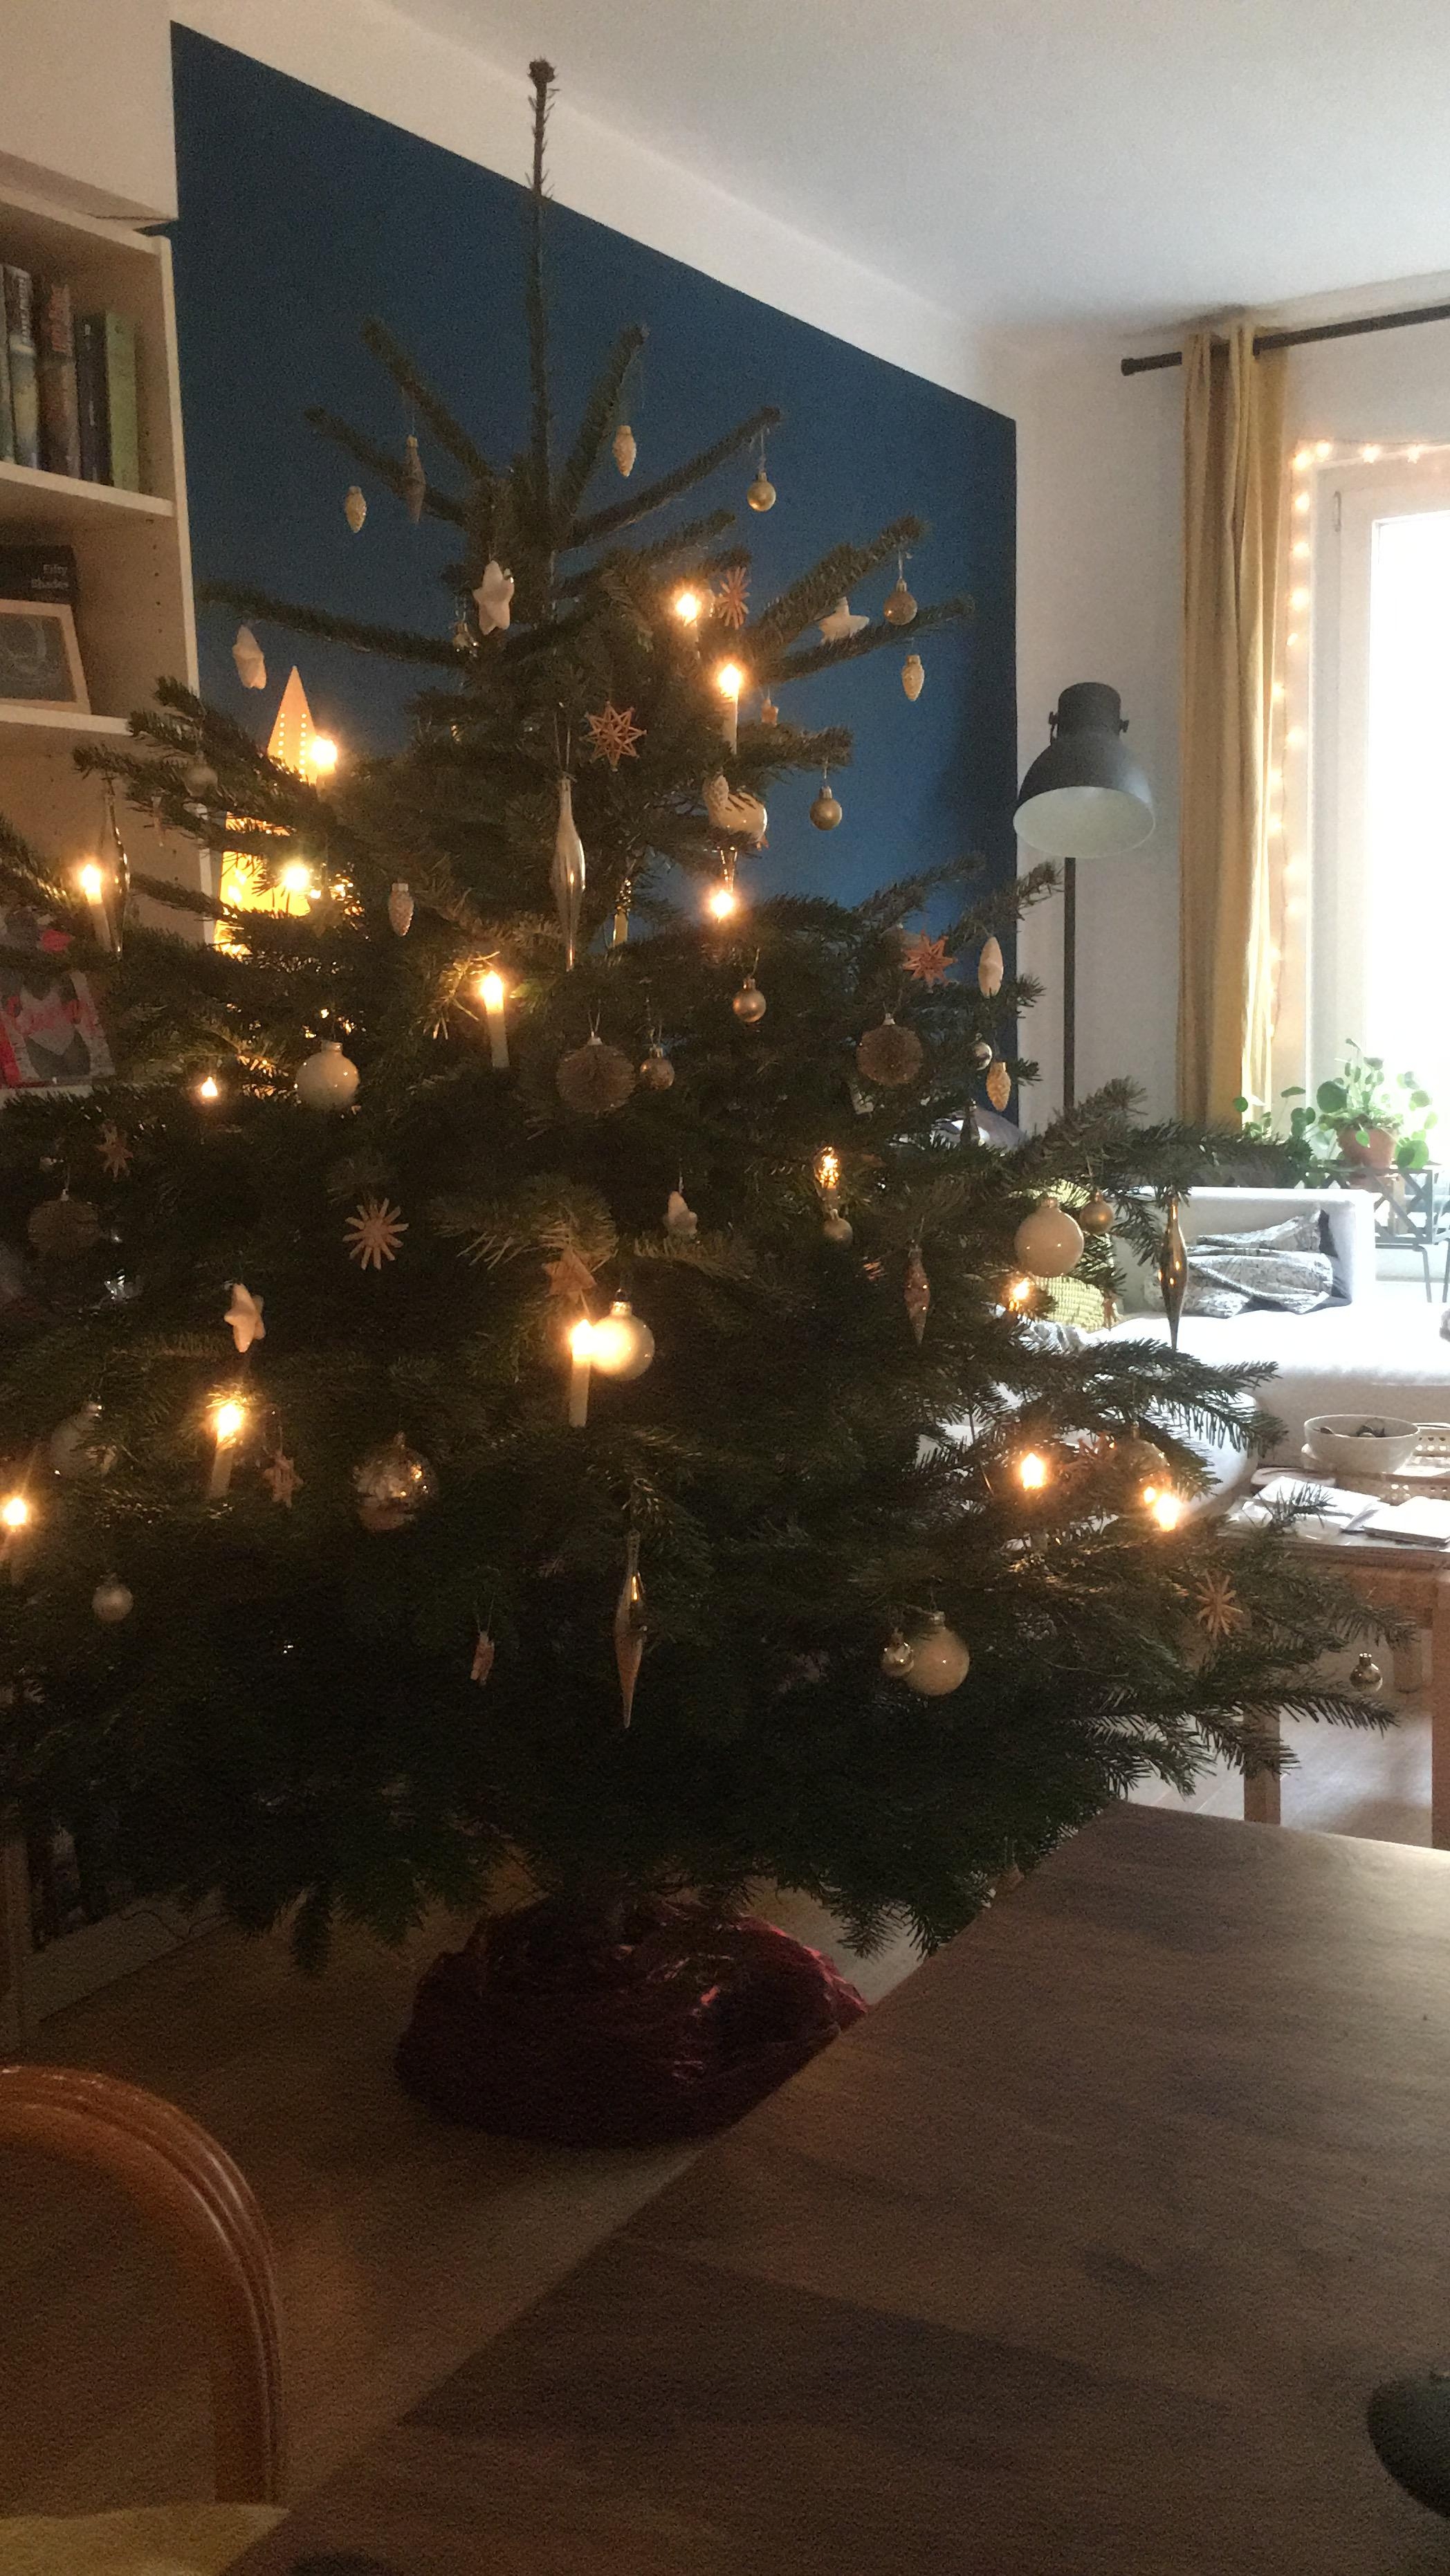 Ich bin echt bereit für den Frühling, aber der Weihnachtsbaum war auch schön.
#christmas #christmastree #bluewall